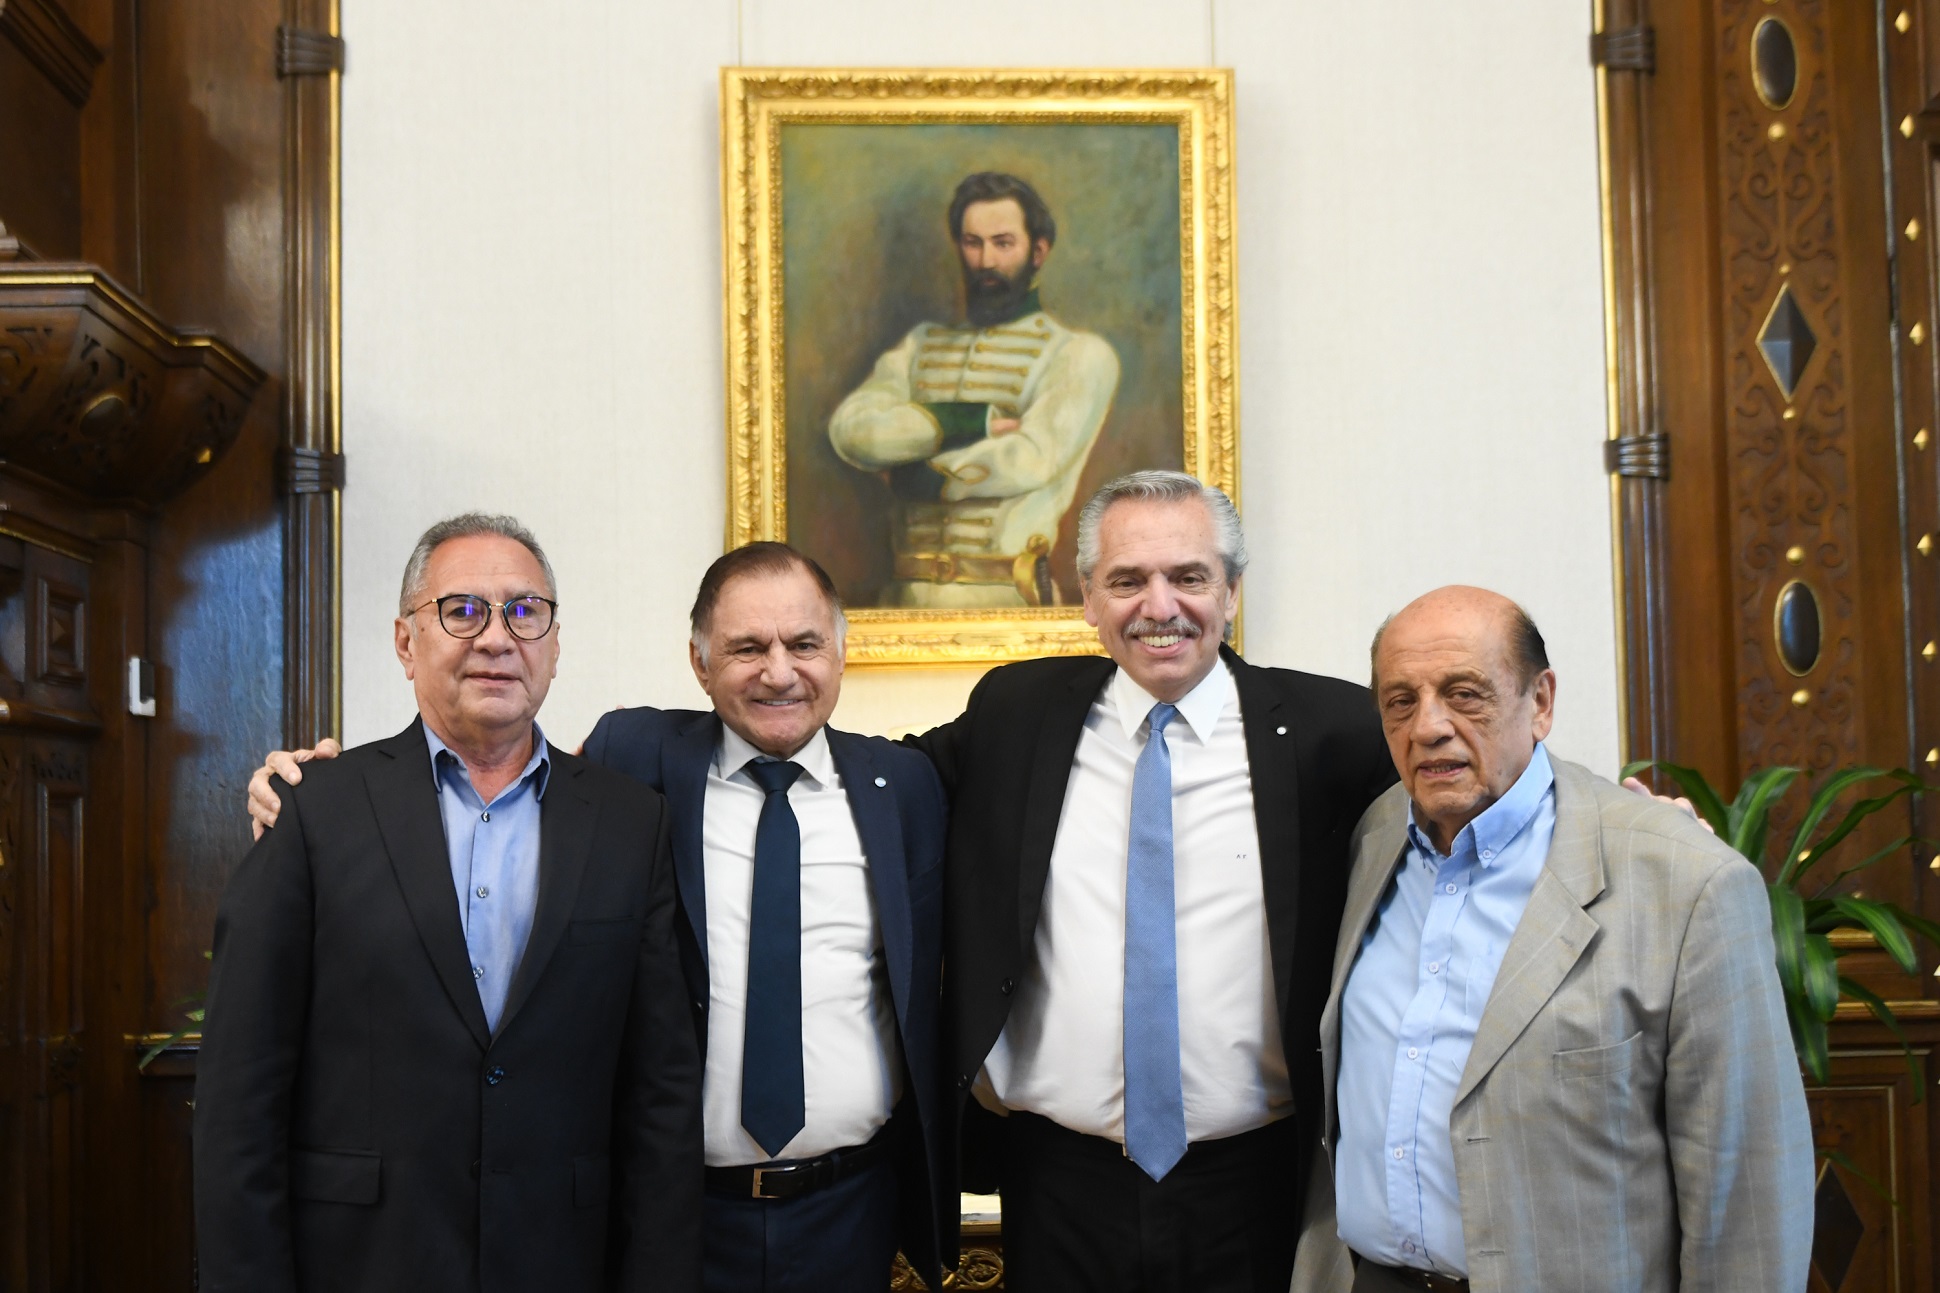  El presidente se reunió con Descalzo, Mussi y Pereyra